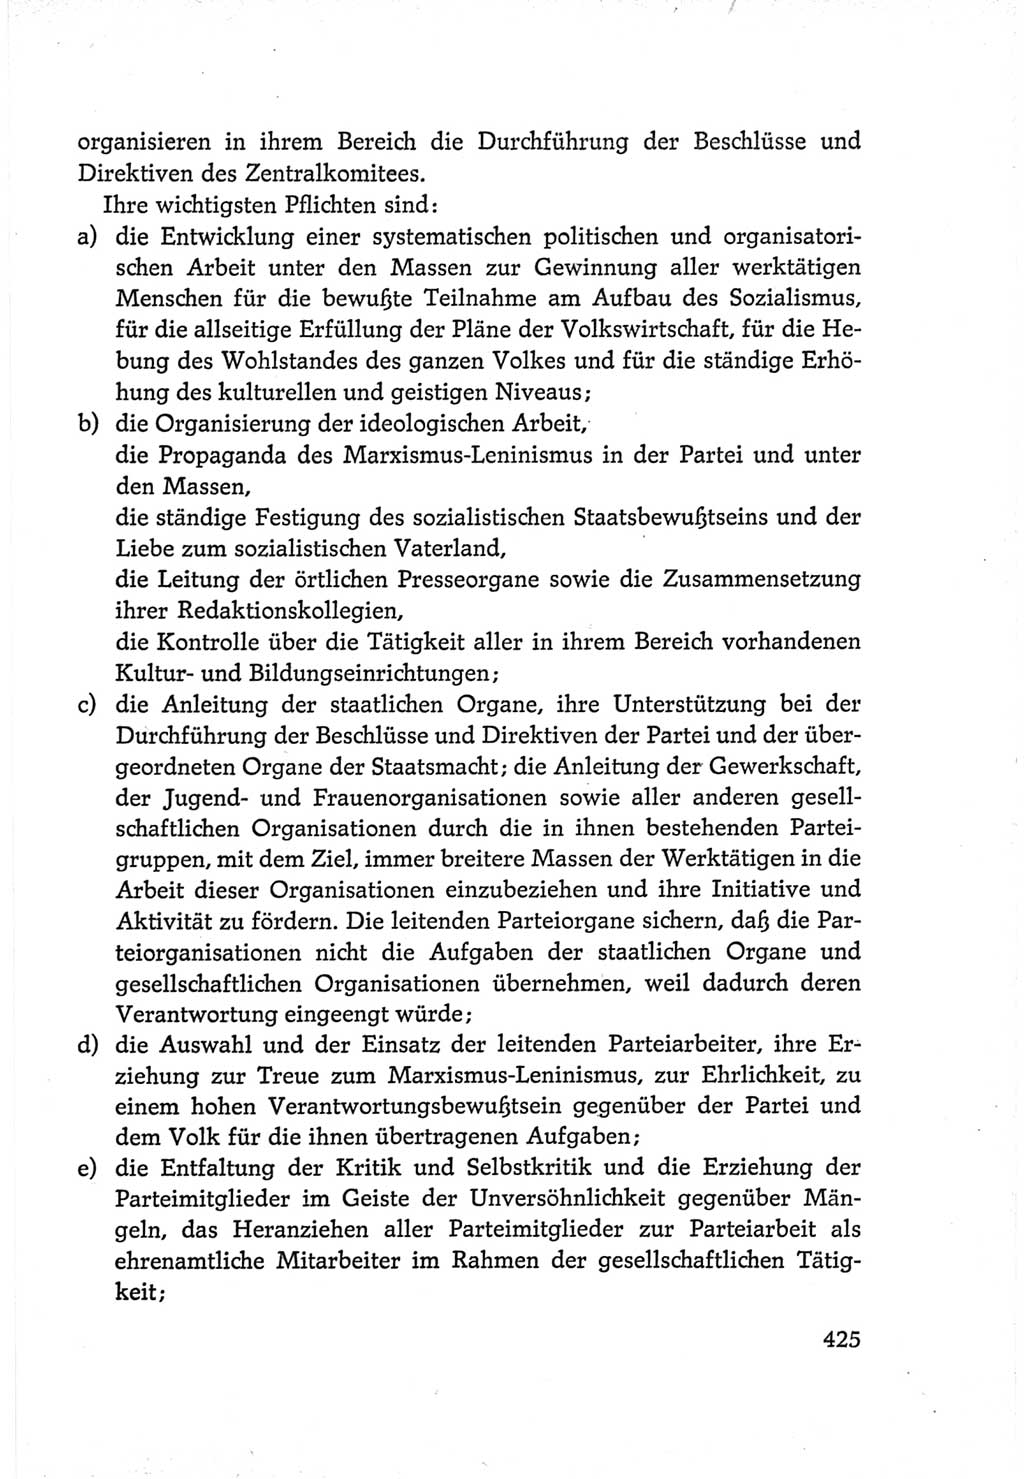 Protokoll der Verhandlungen des Ⅵ. Parteitages der Sozialistischen Einheitspartei Deutschlands (SED) [Deutsche Demokratische Republik (DDR)] 1963, Band Ⅳ, Seite 425 (Prot. Verh. Ⅵ. PT SED DDR 1963, Bd. Ⅳ, S. 425)